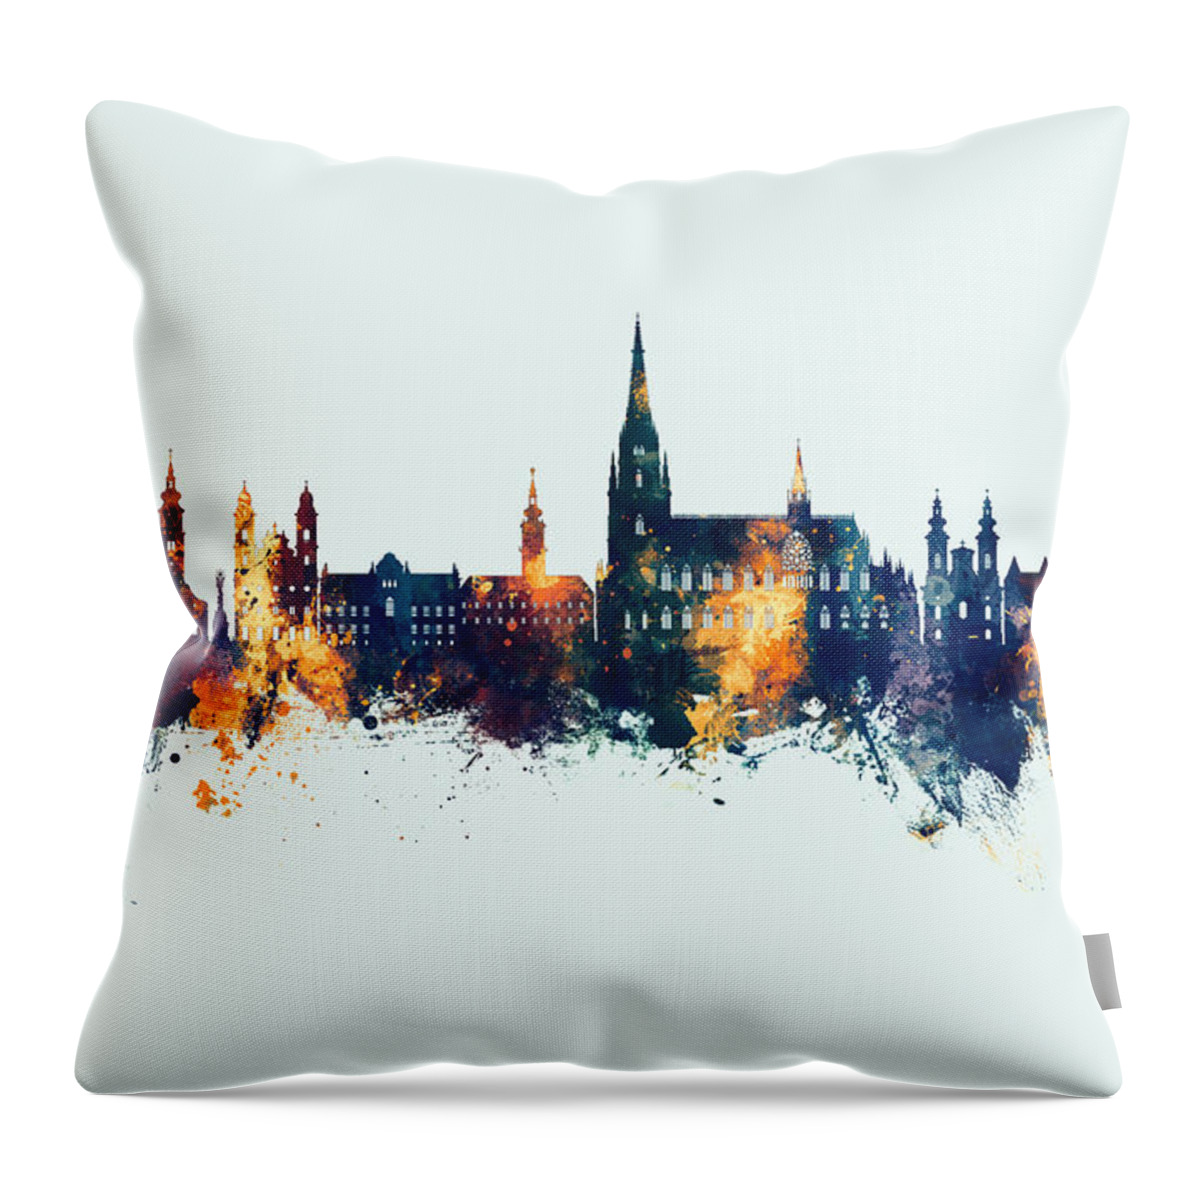 Linz Throw Pillow featuring the digital art Linz Austria Skyline #49 by Michael Tompsett